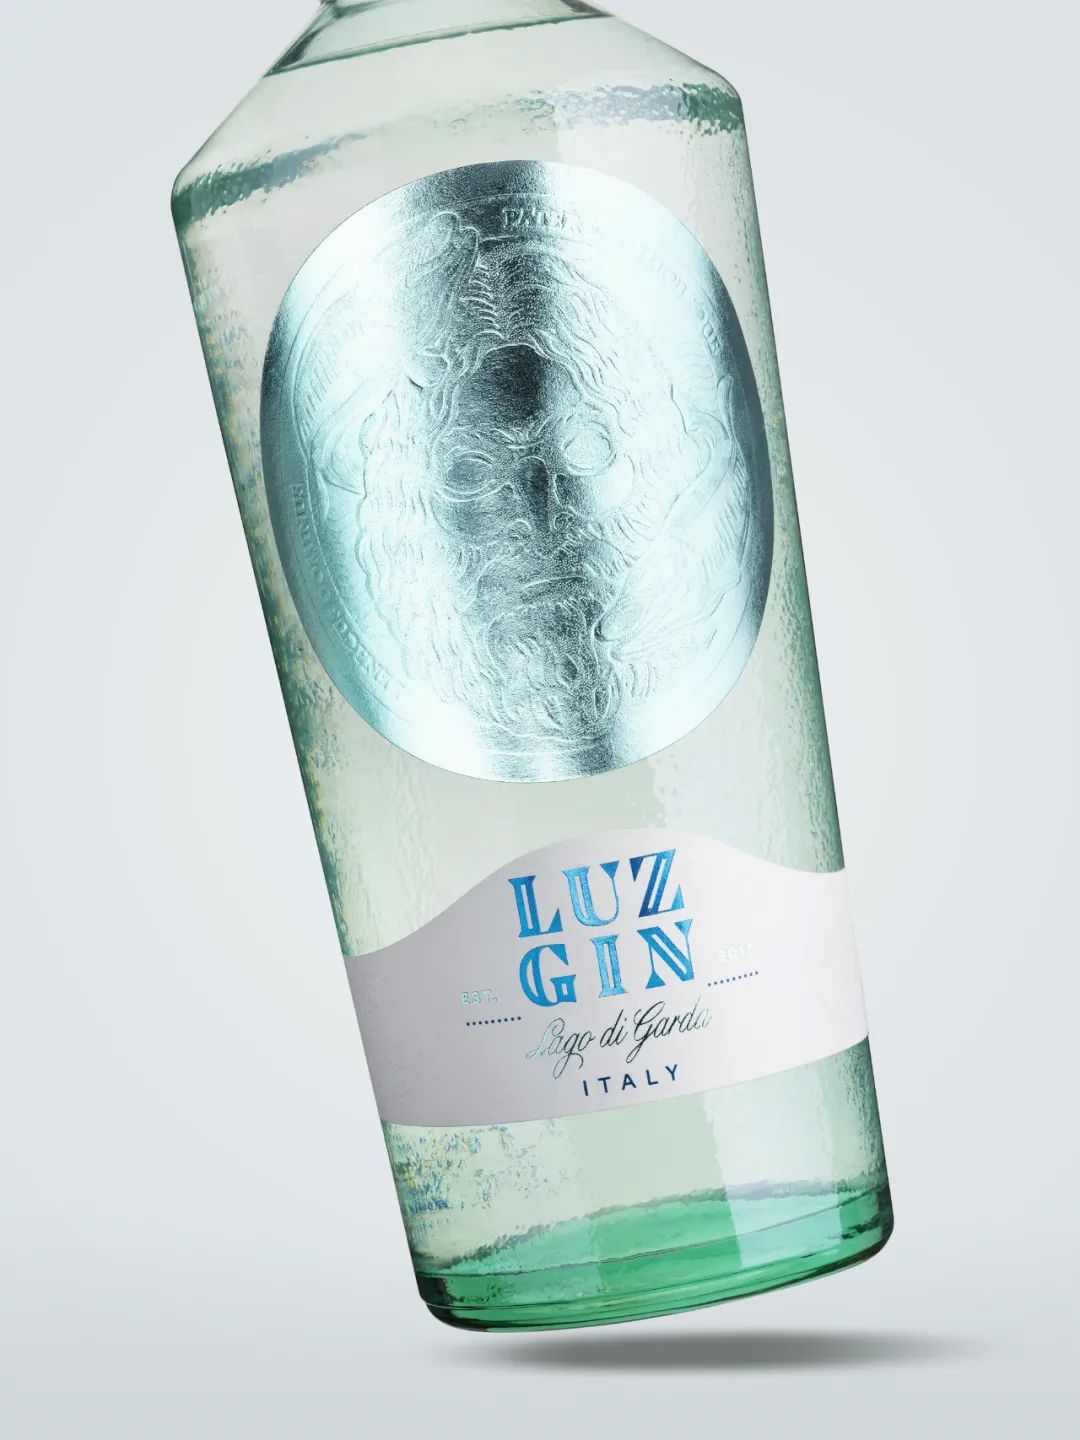 Luz Gin